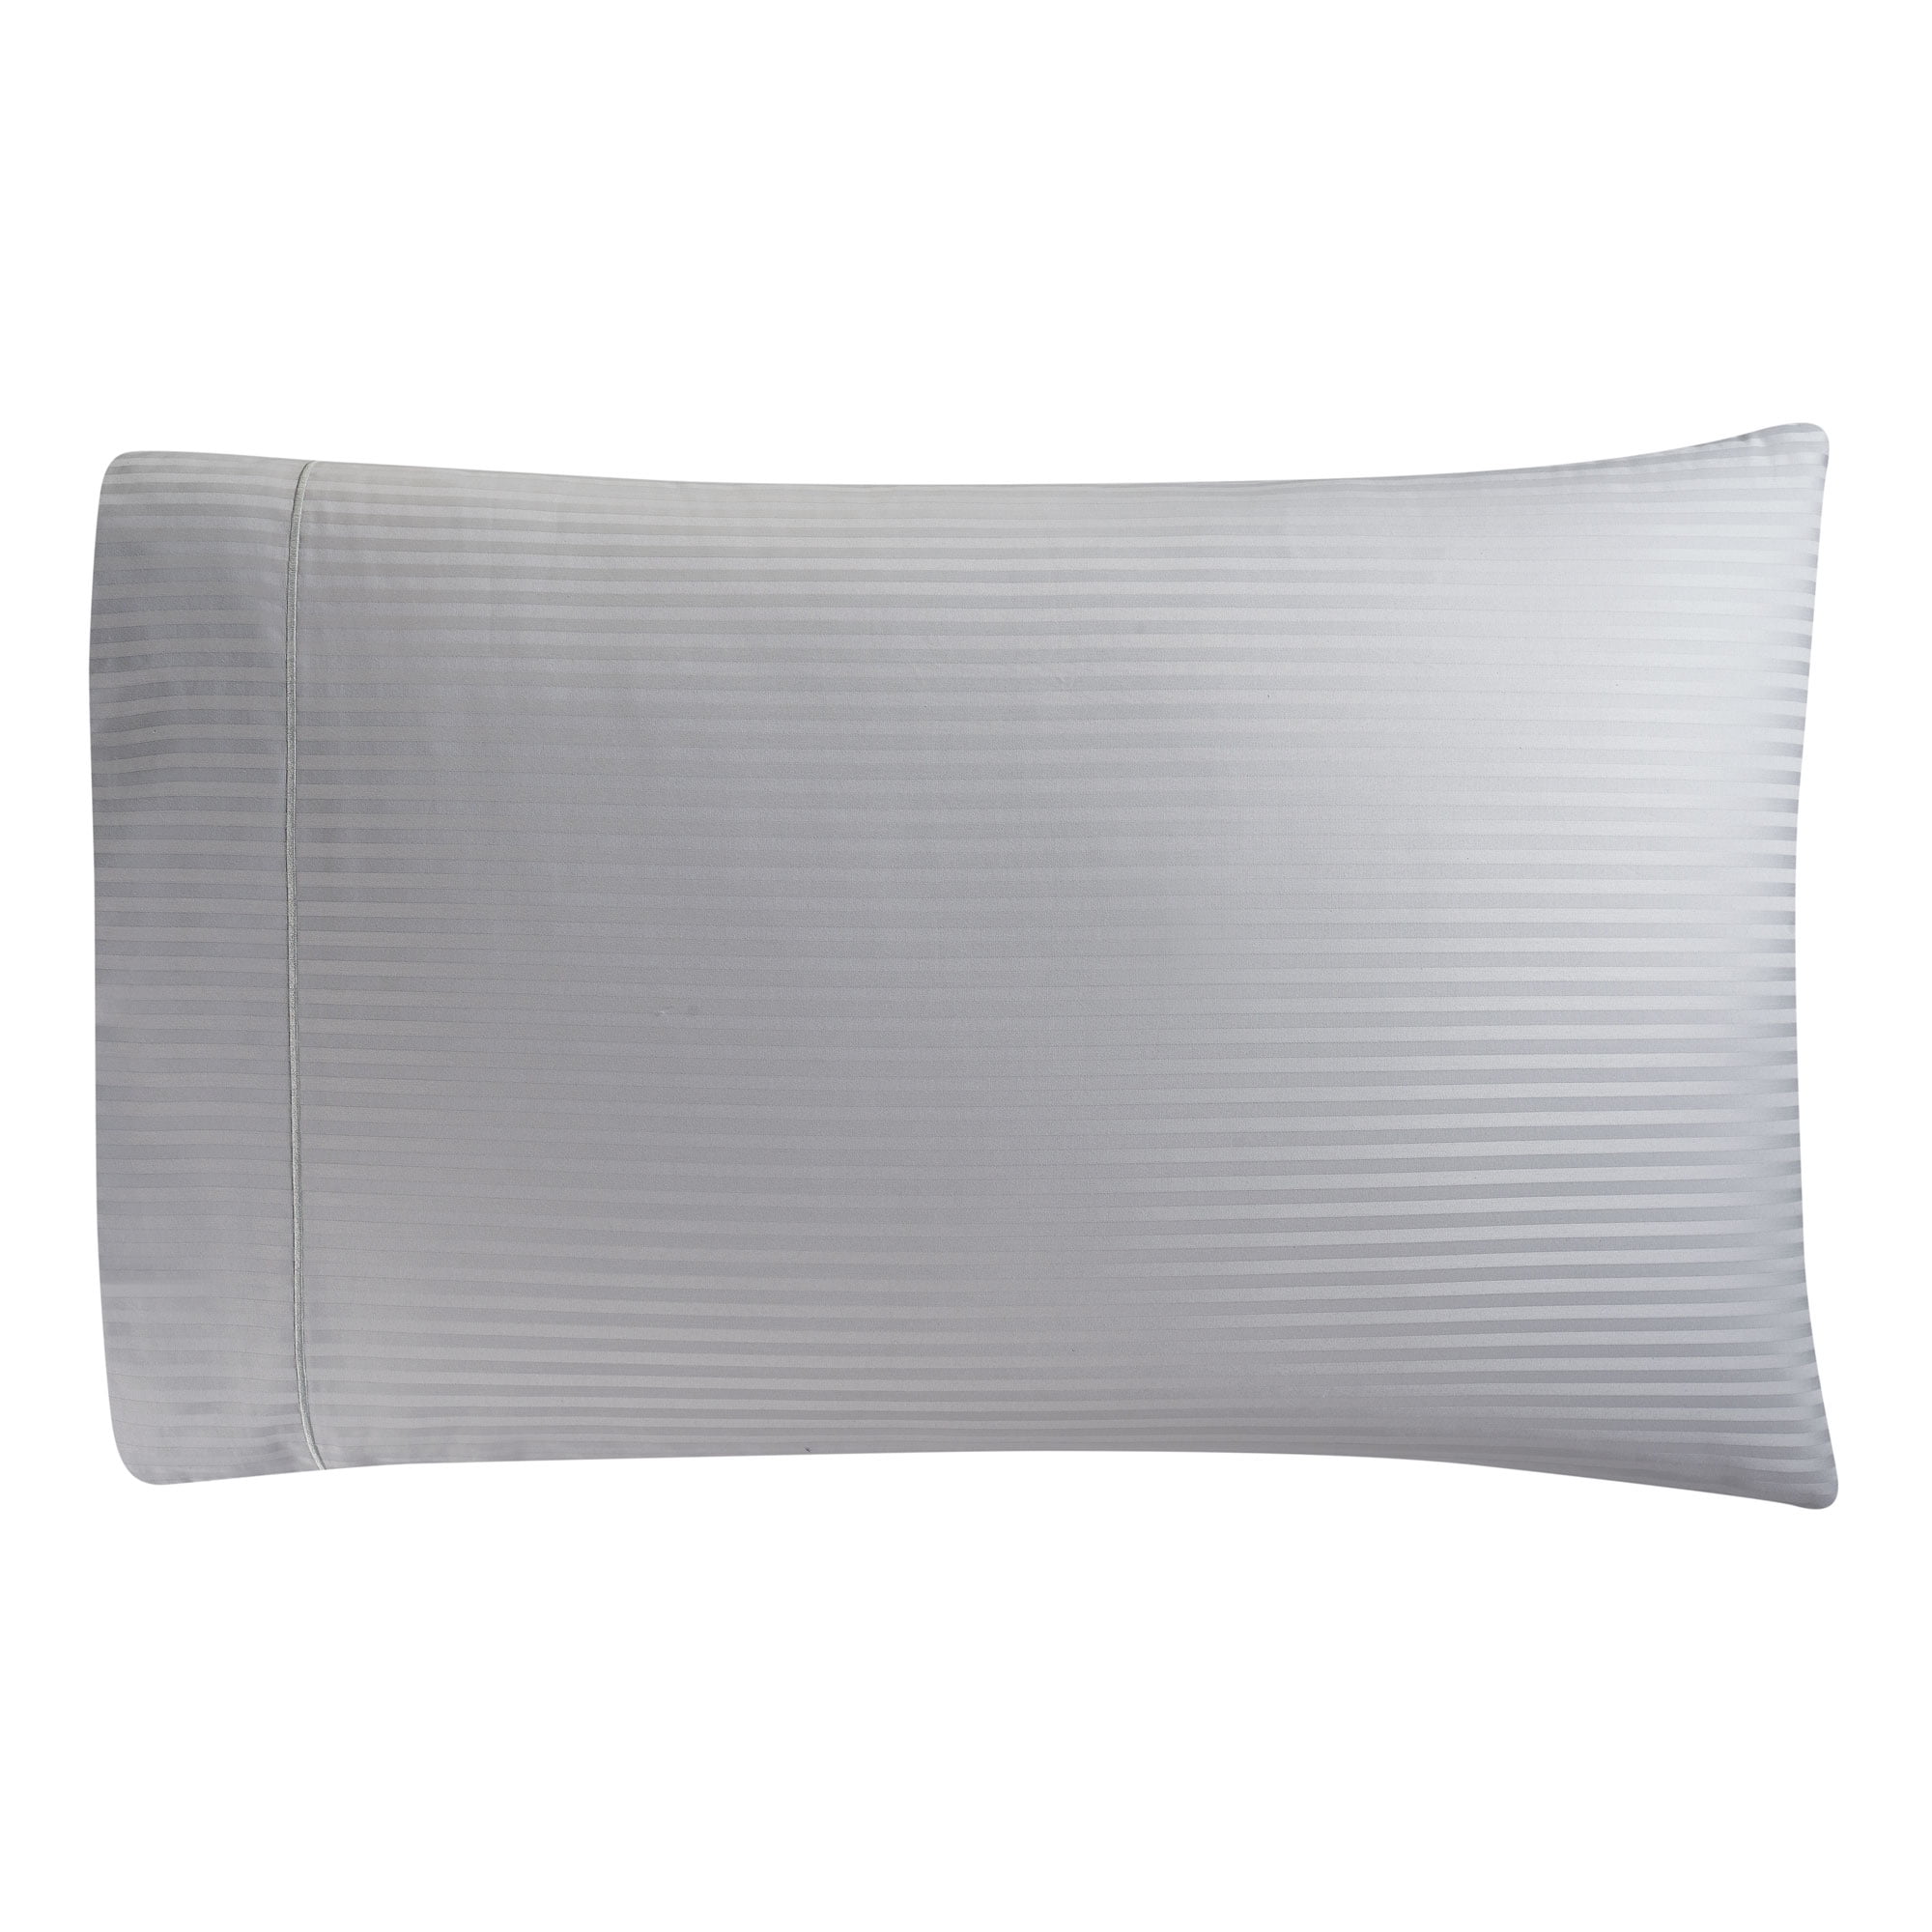 Luxury Egyptian Cotton Set of 2 Pillowcase 600 TC All Size Light Grey Stripe 